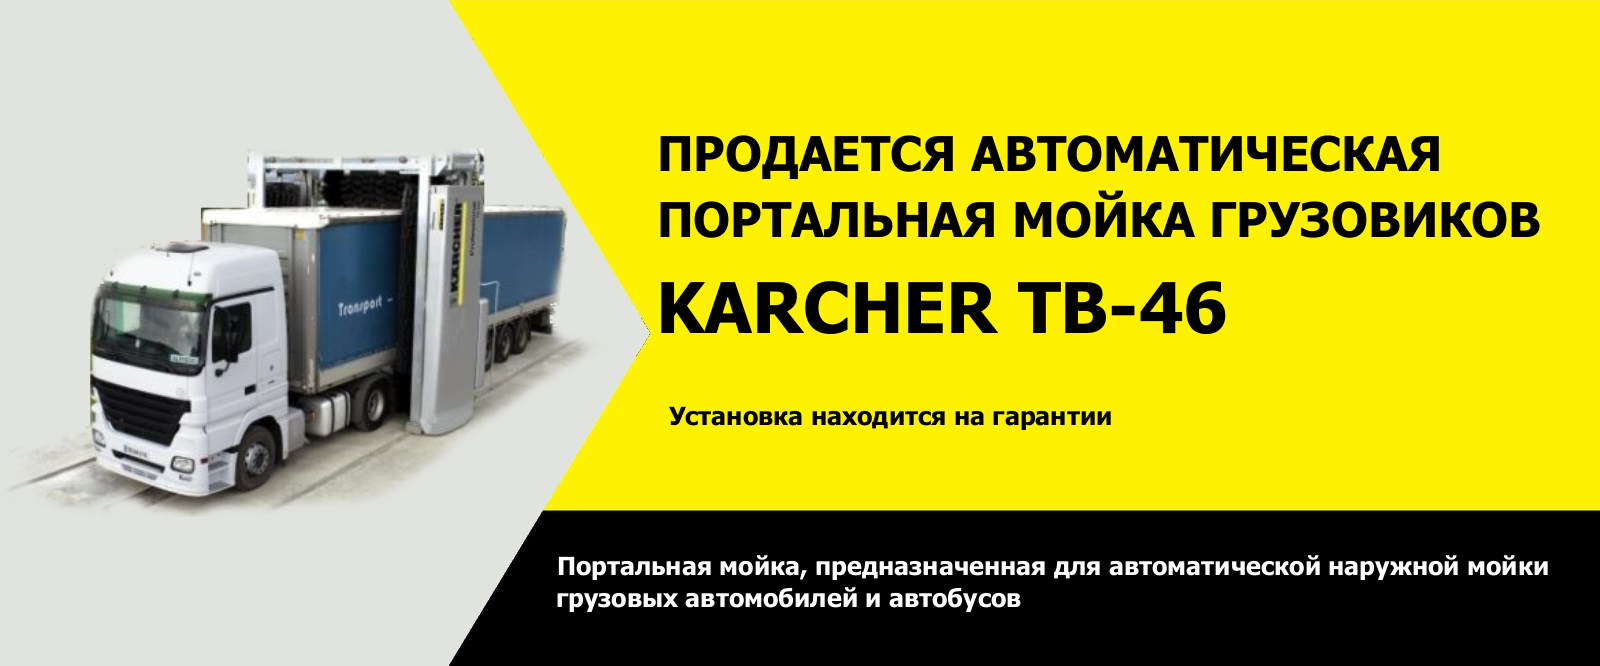 karcher--46 Продается автоматическая портальная мойка KARCHER TB-46